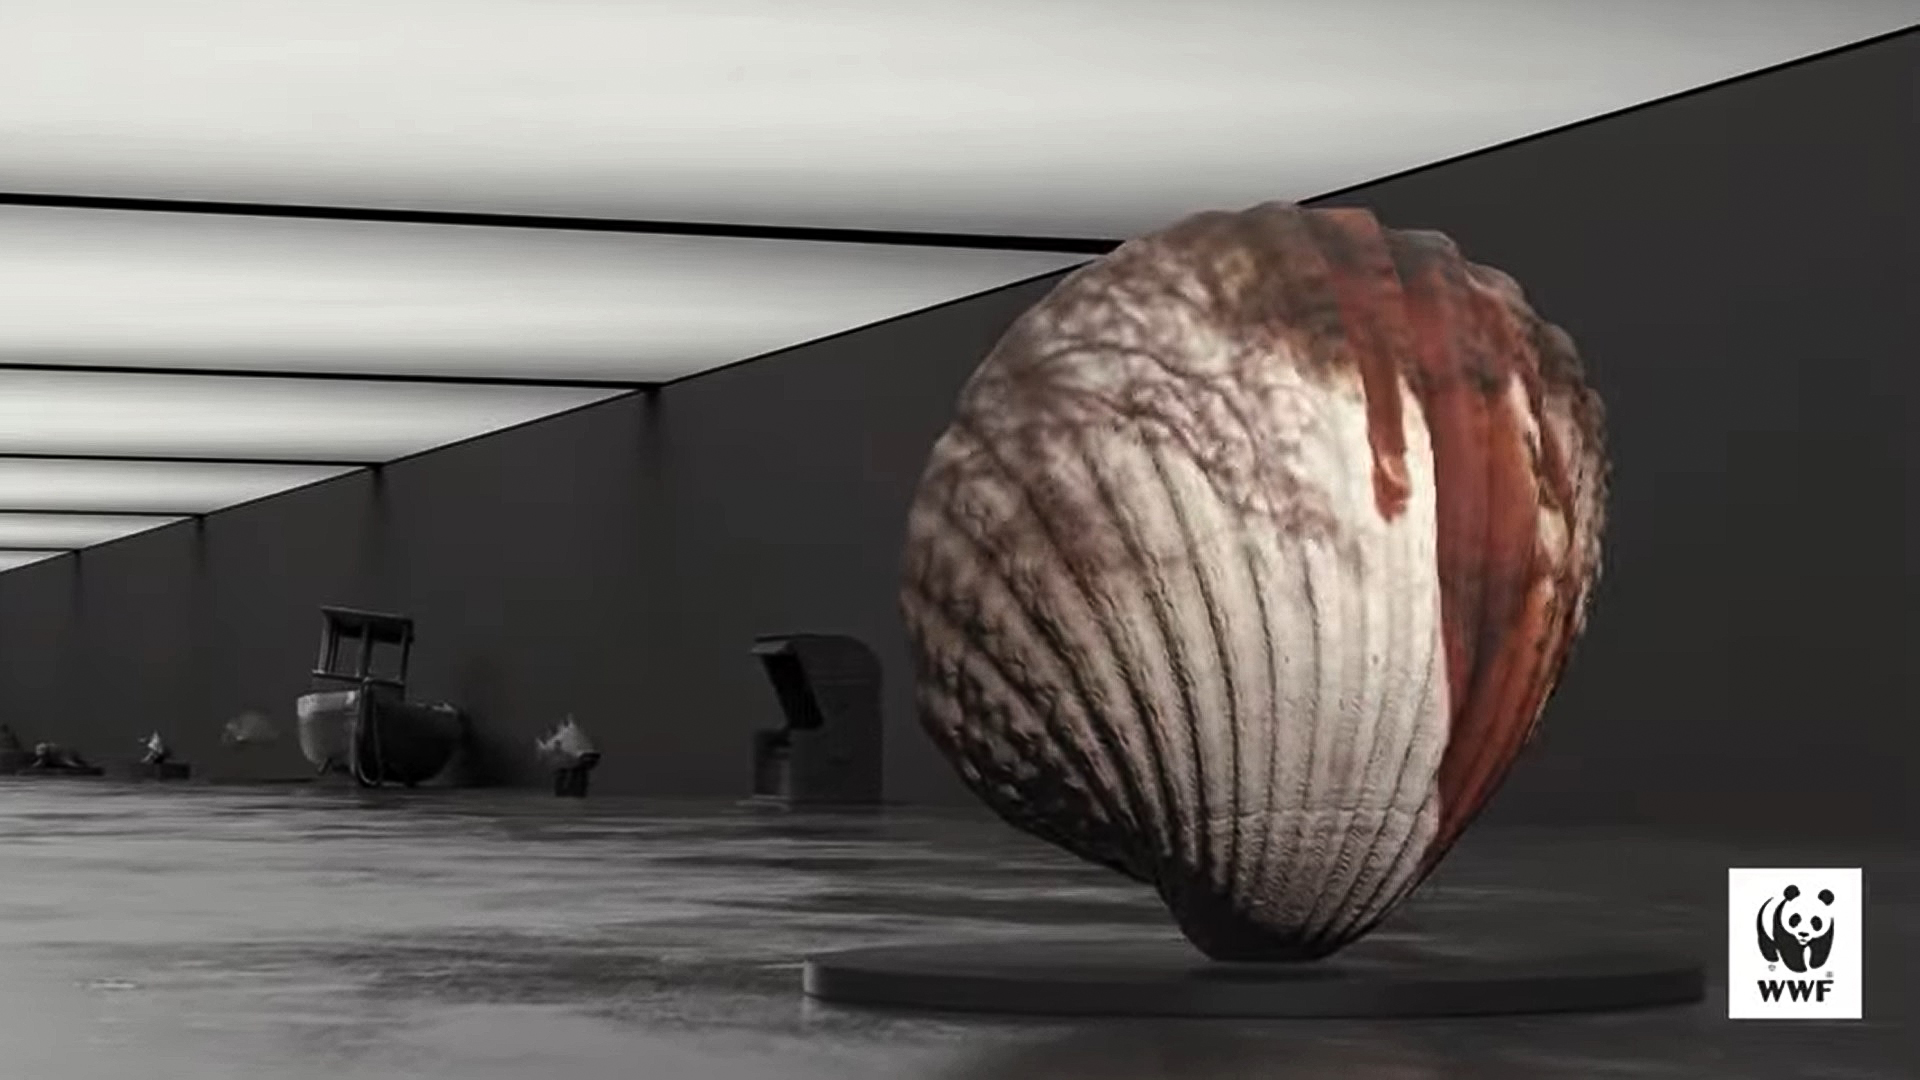 Bałtyk w wirtualnym muzeum, źródło: zrzut ekranu z video WWF Polska